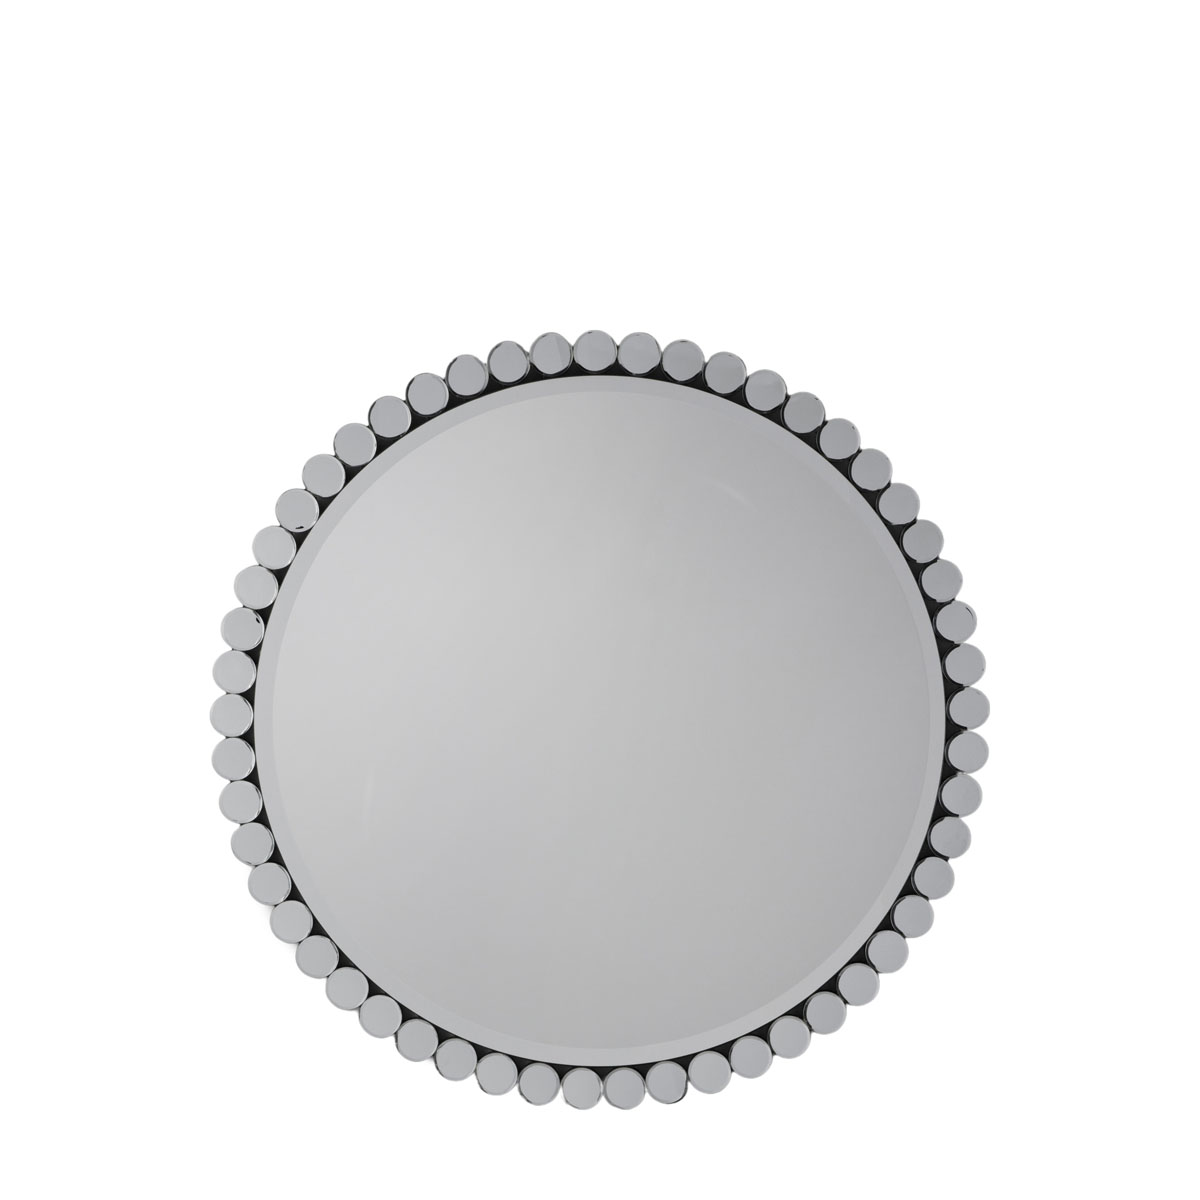 Linz Round Mirror 900mm